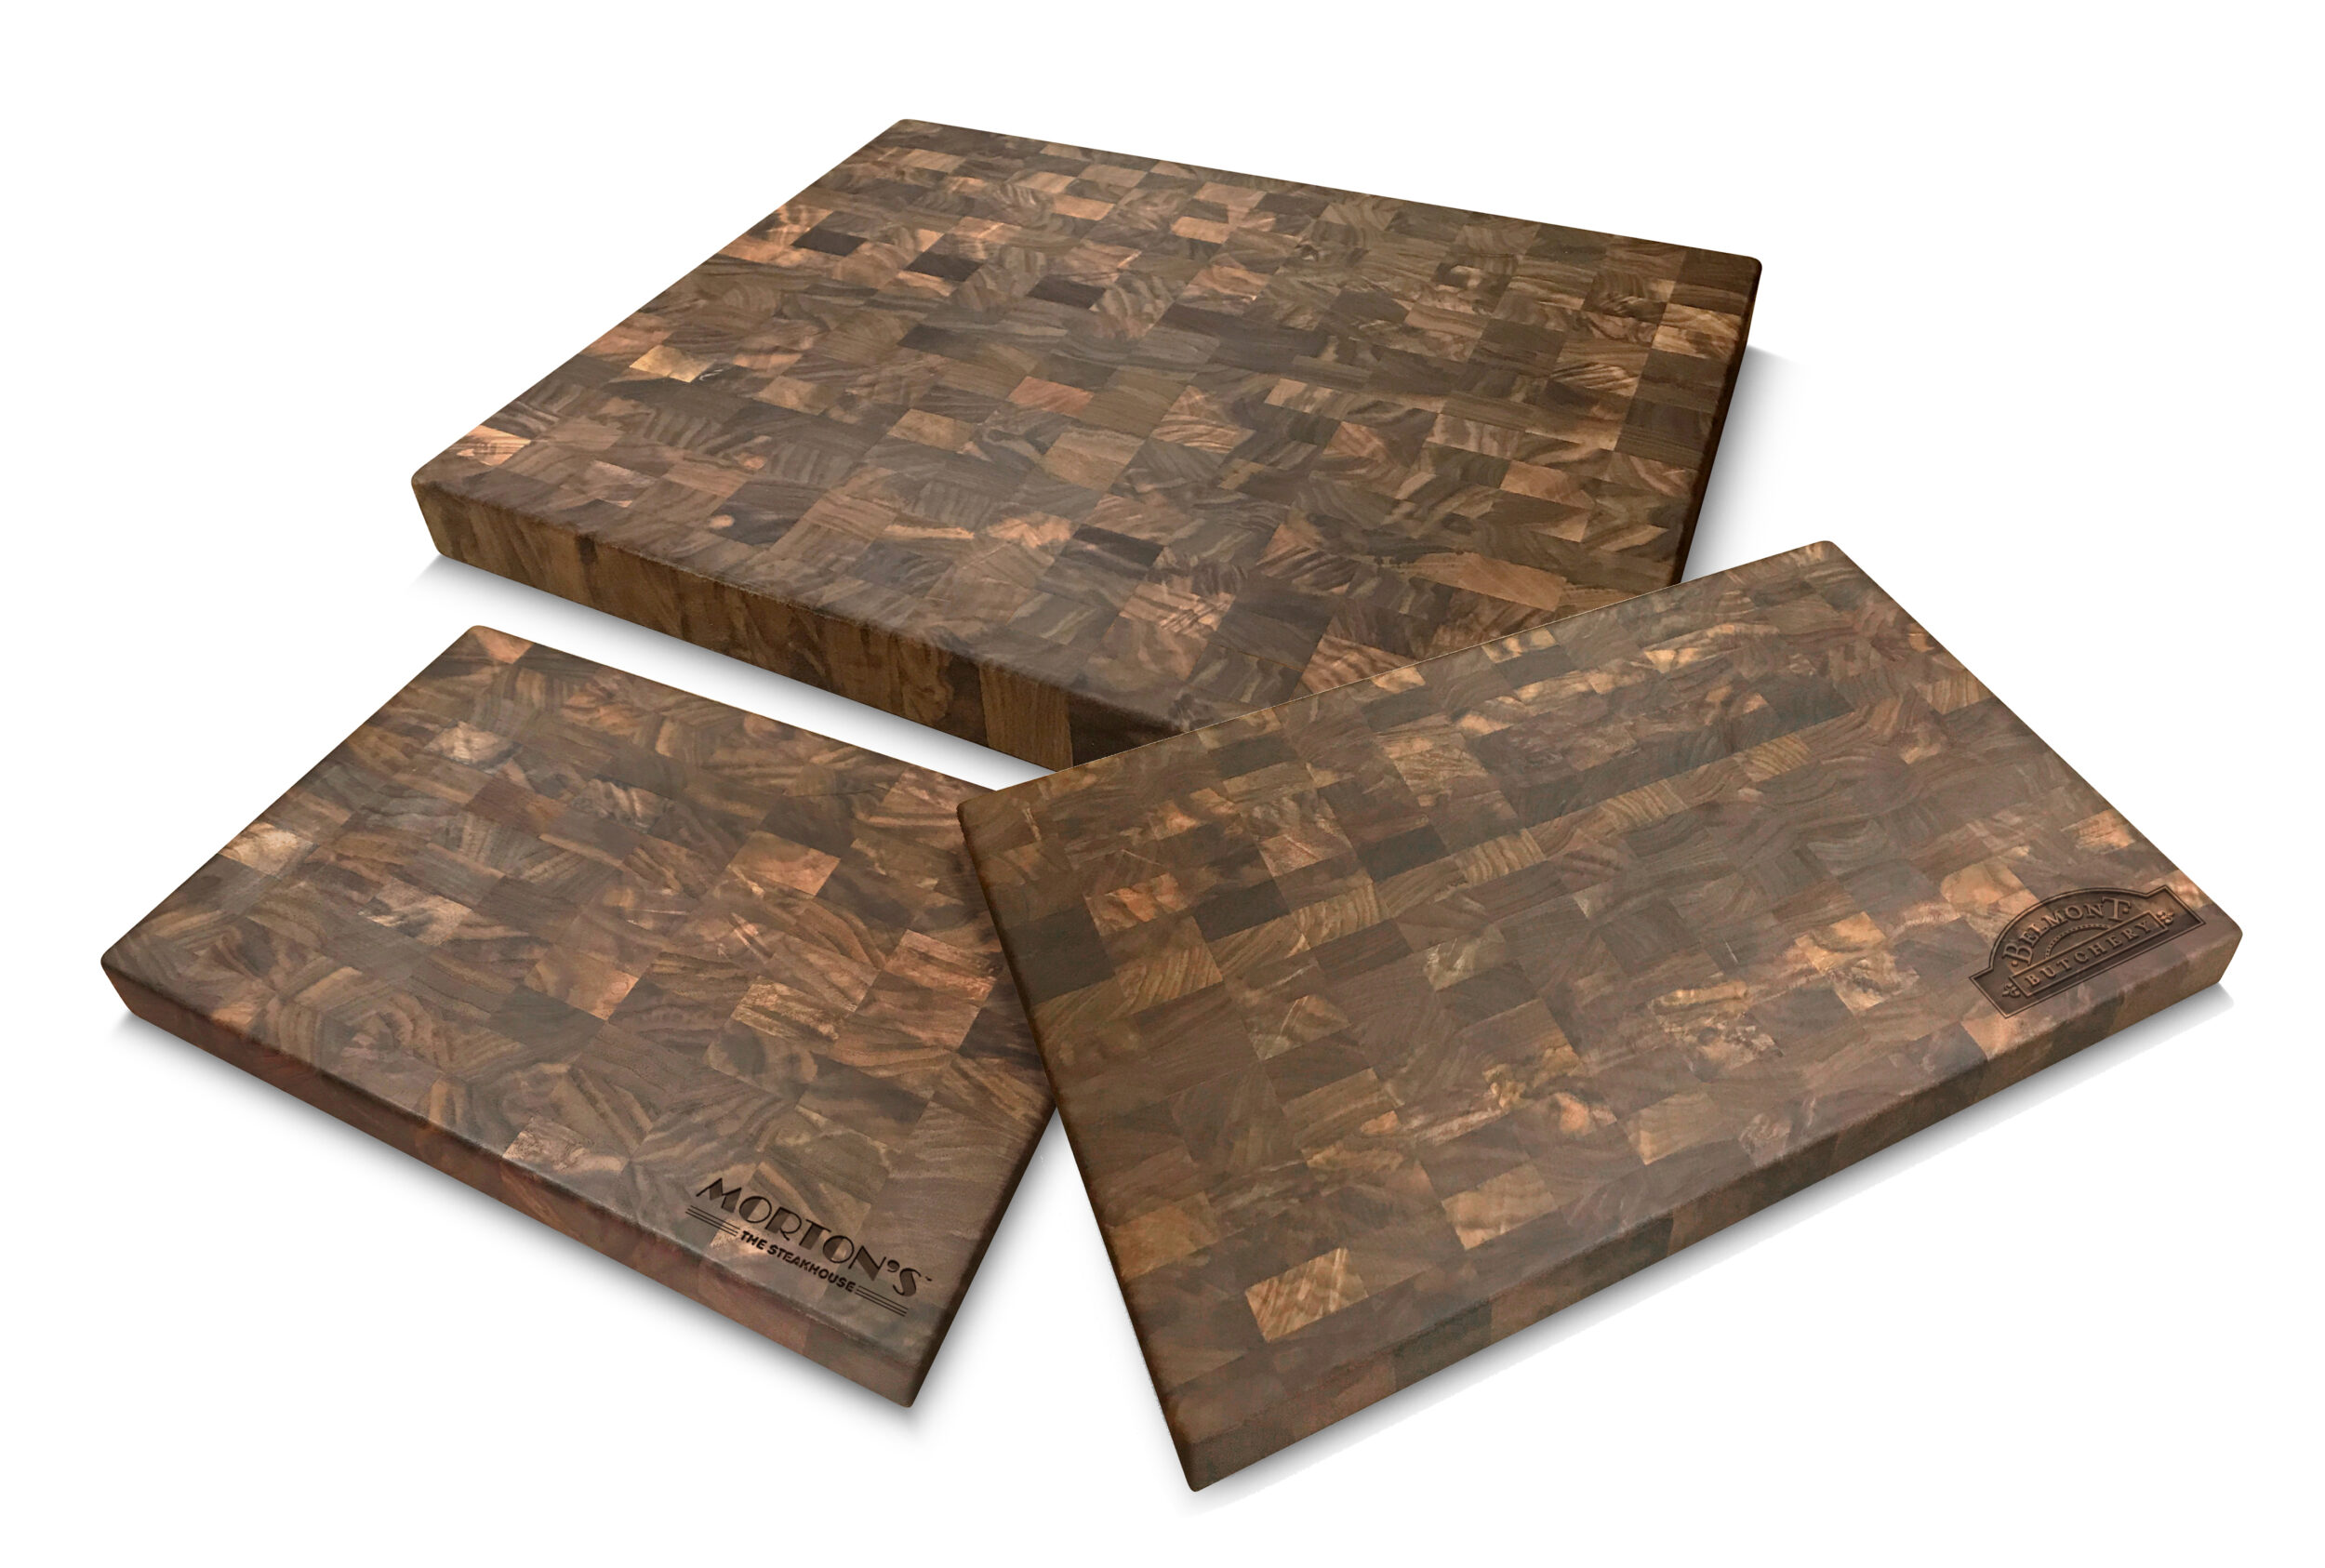 Solid Sappy Walnut Cutting Board - Moslow Wood Products (Virginia)